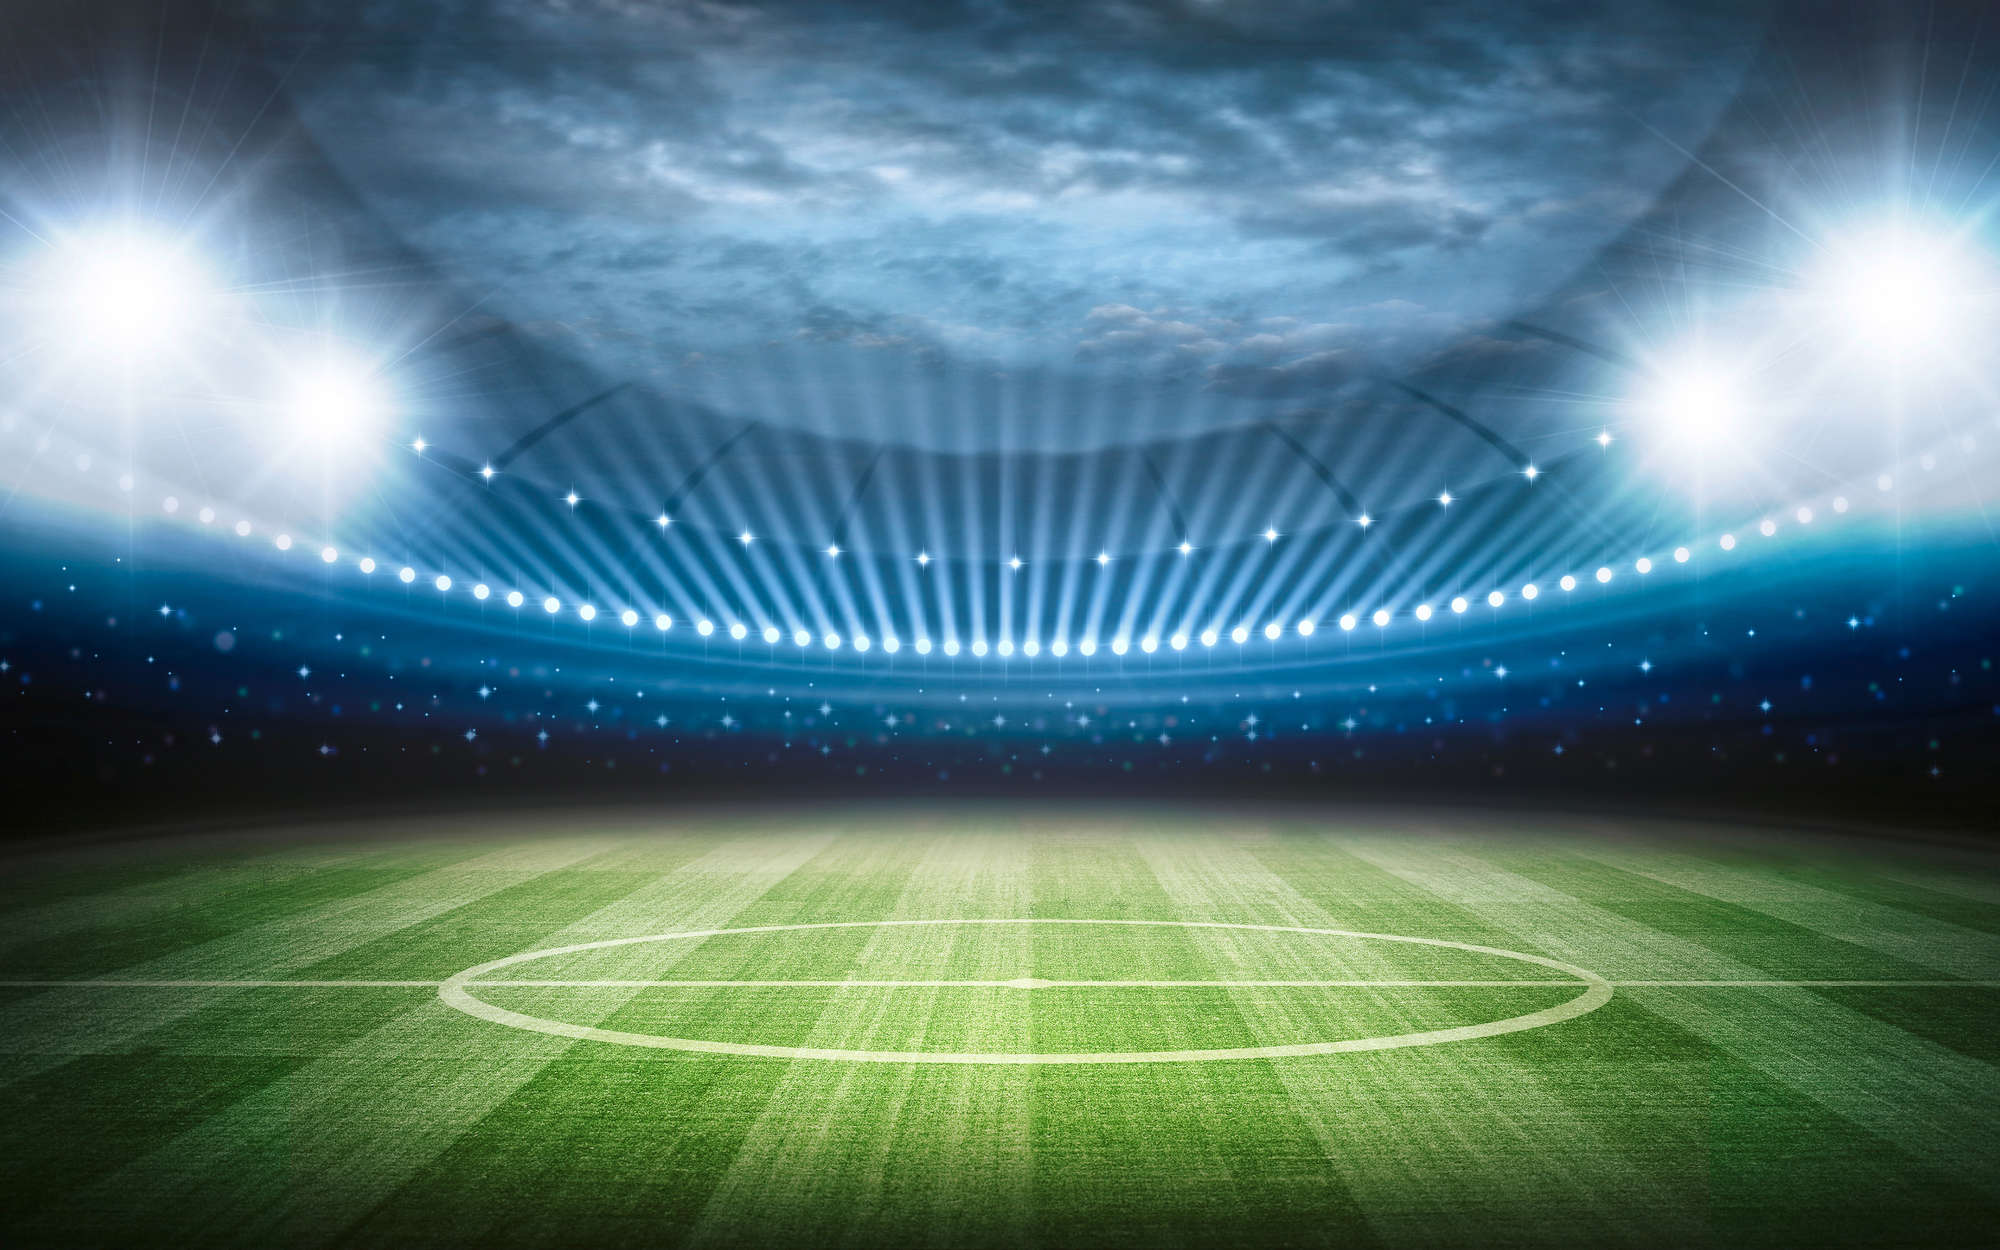             Papel pintado Estadio de fútbol con reflector - tejido no tejido liso mate
        